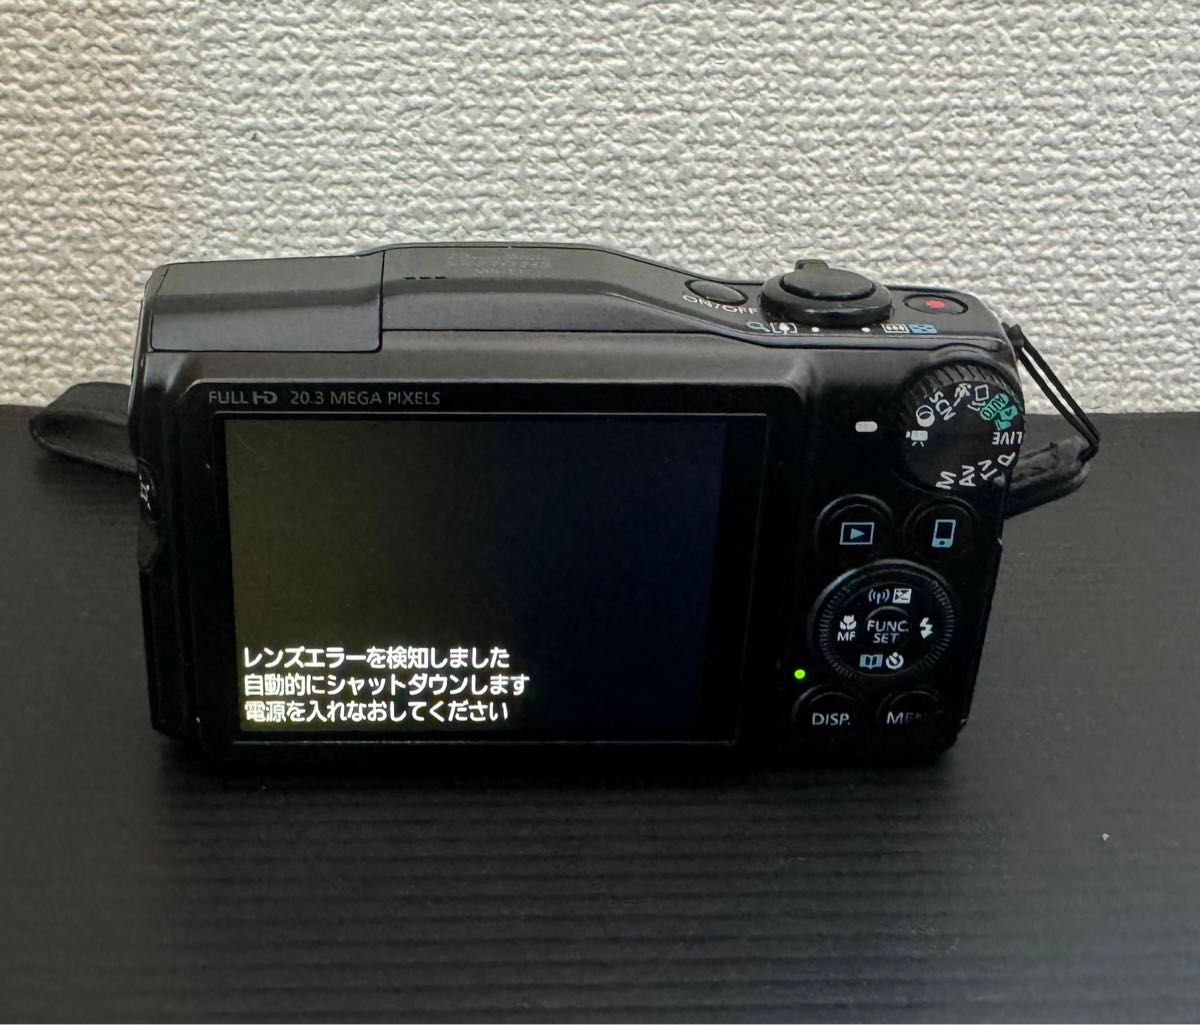  ジャンク品 Canon キャノン PowerShot SX710HS Wi-Fi